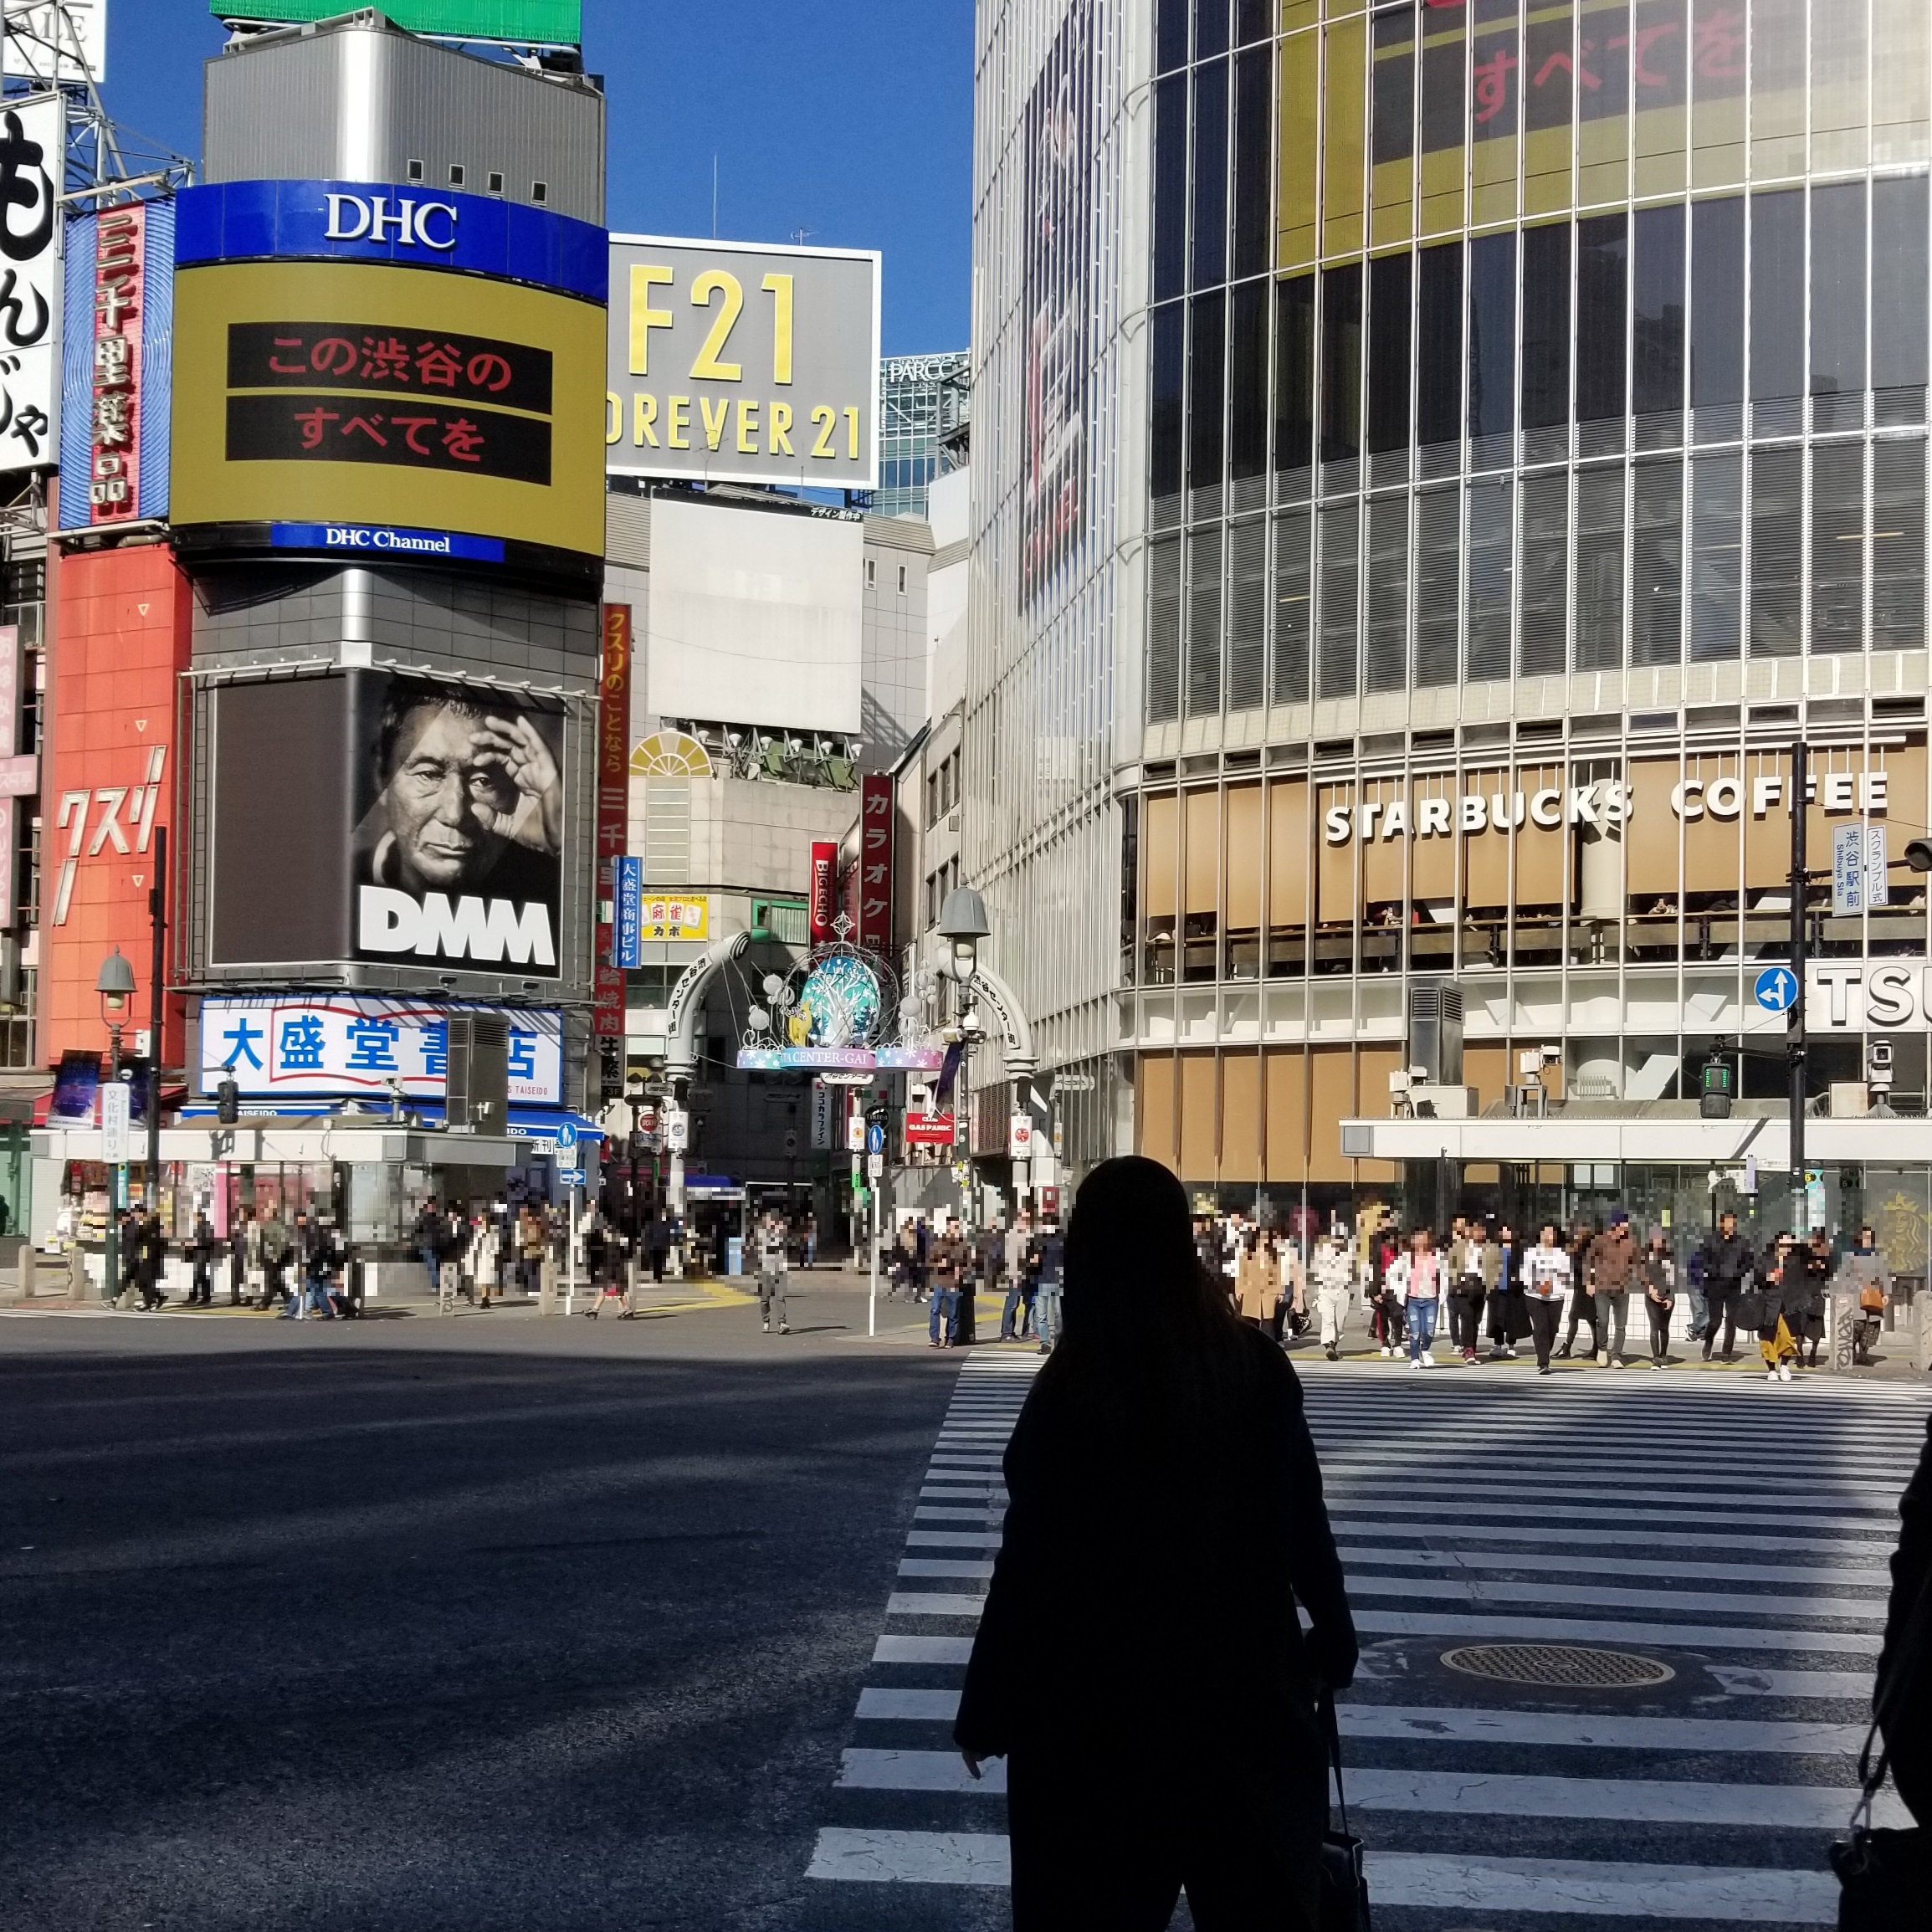 3.大盛堂書店とスターバックスの間に渋谷センター街があります。